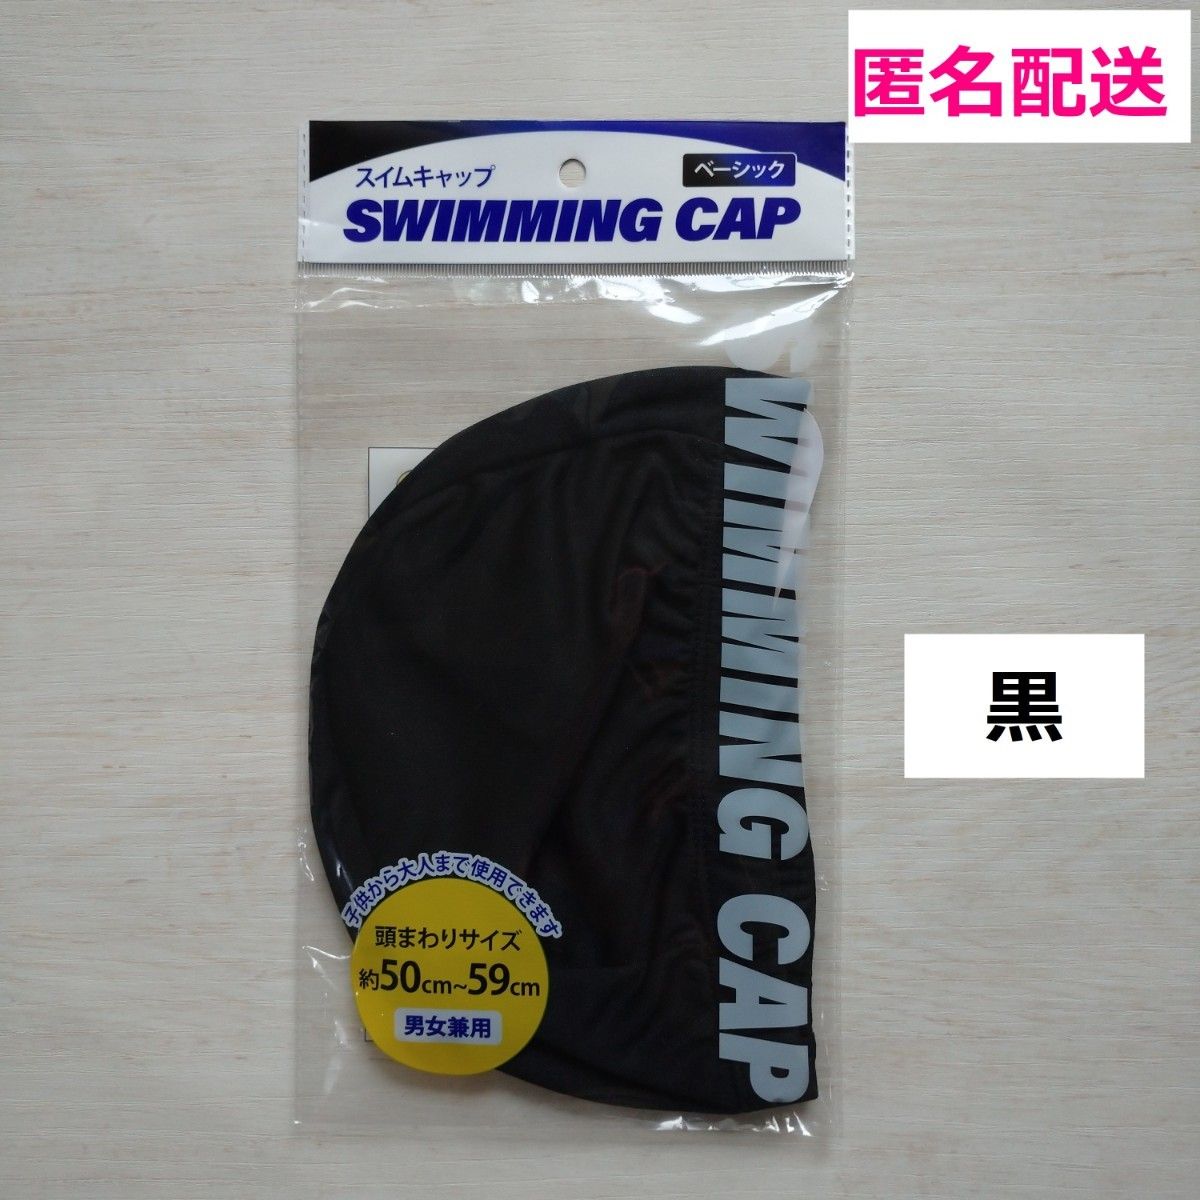 ★新品★スイムキャップ ブラック 黒 プール 帽子 キャップ スイミング  スイミングキャップ 水泳帽子 1個 子供